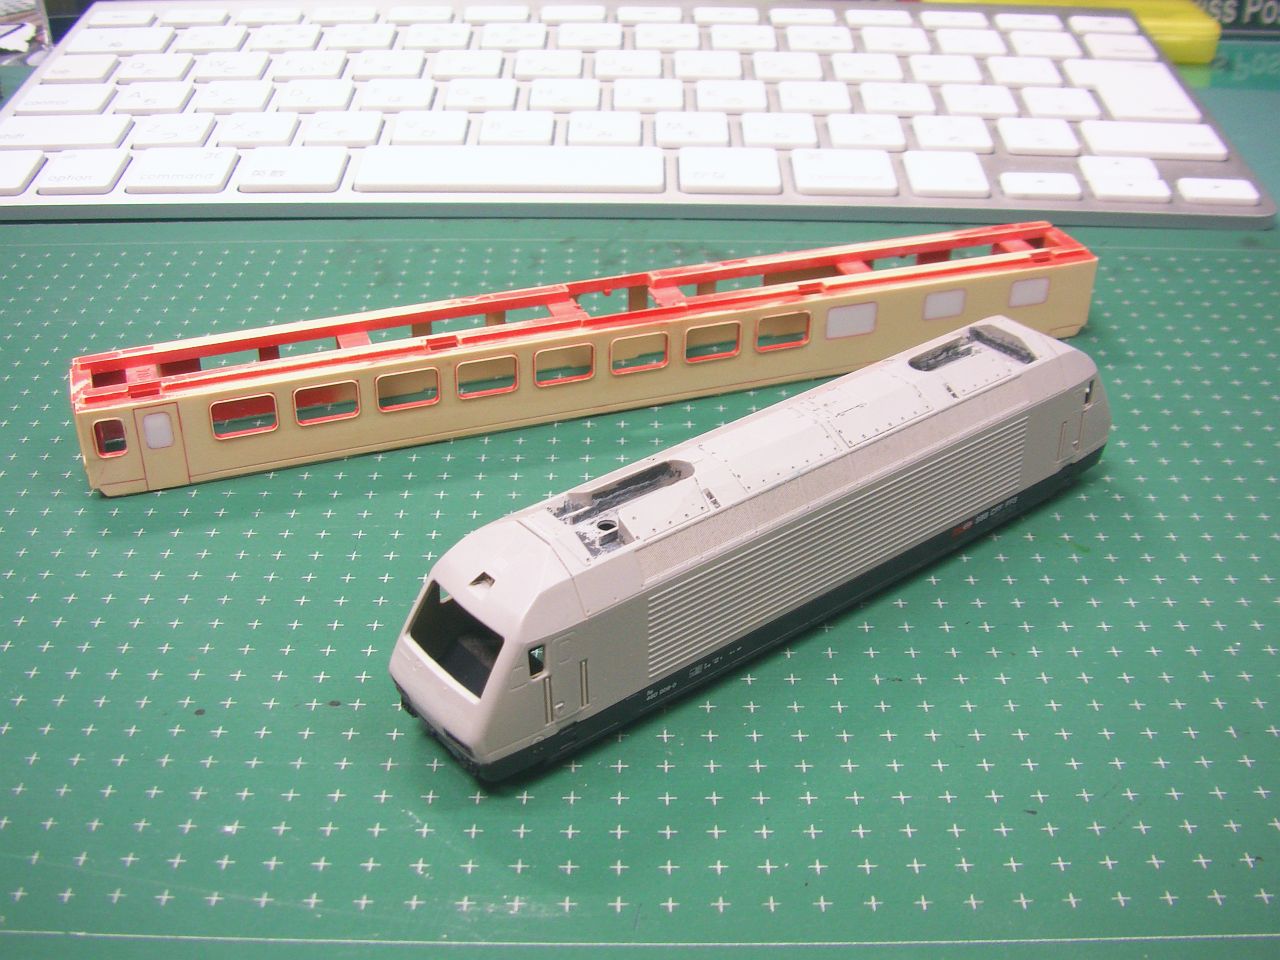 http://train.khsoft.gr.jp/overseas/blogimage/PIC_0018.jpg